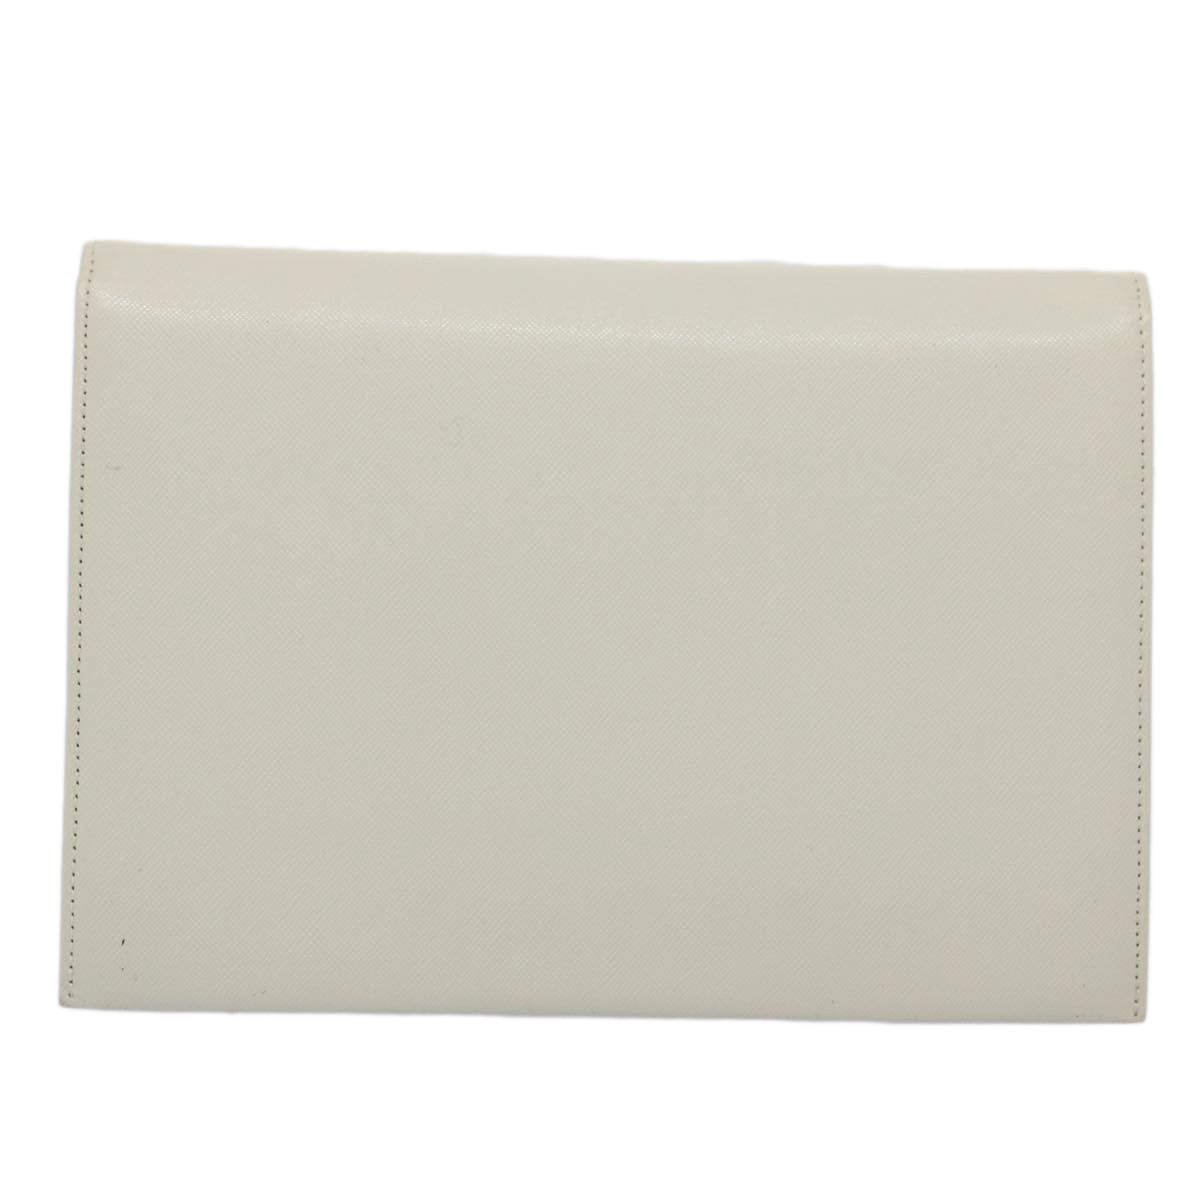 SAINT LAURENT Clutch Bag Leather White Auth ar11120